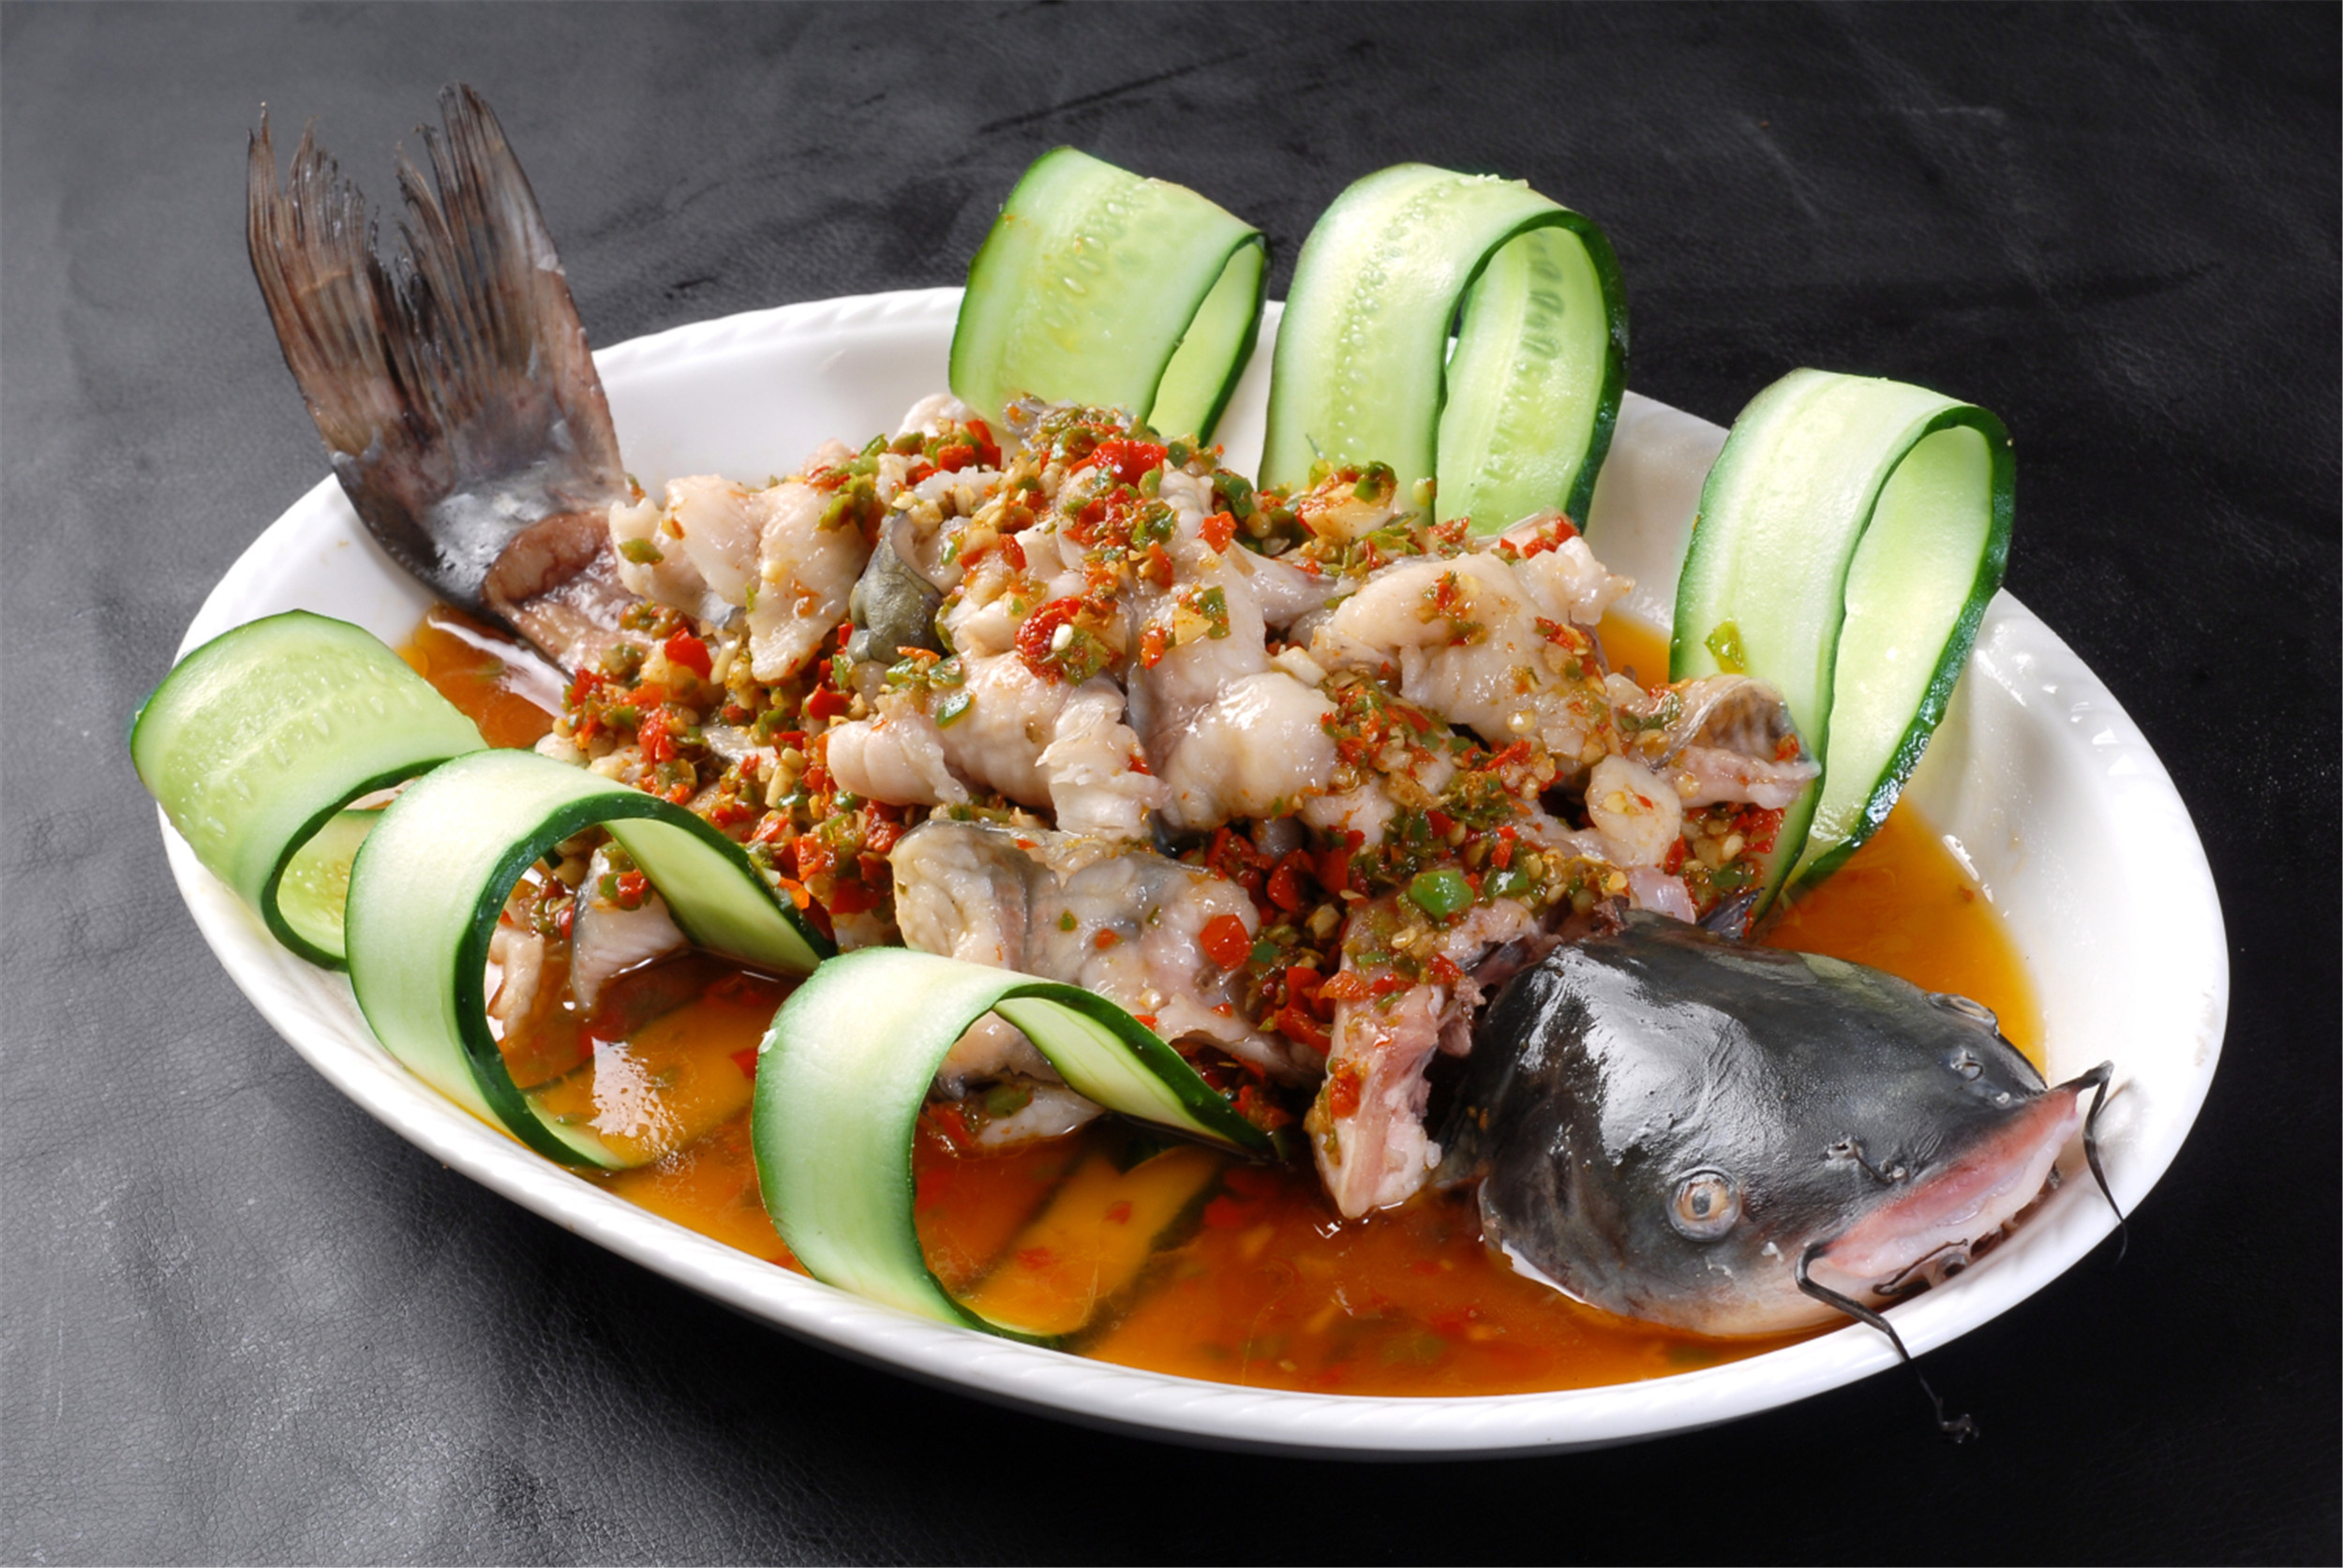 鲜椒钳鱼:新鲜的钳鱼,鲜嫩多汁,入口即化.